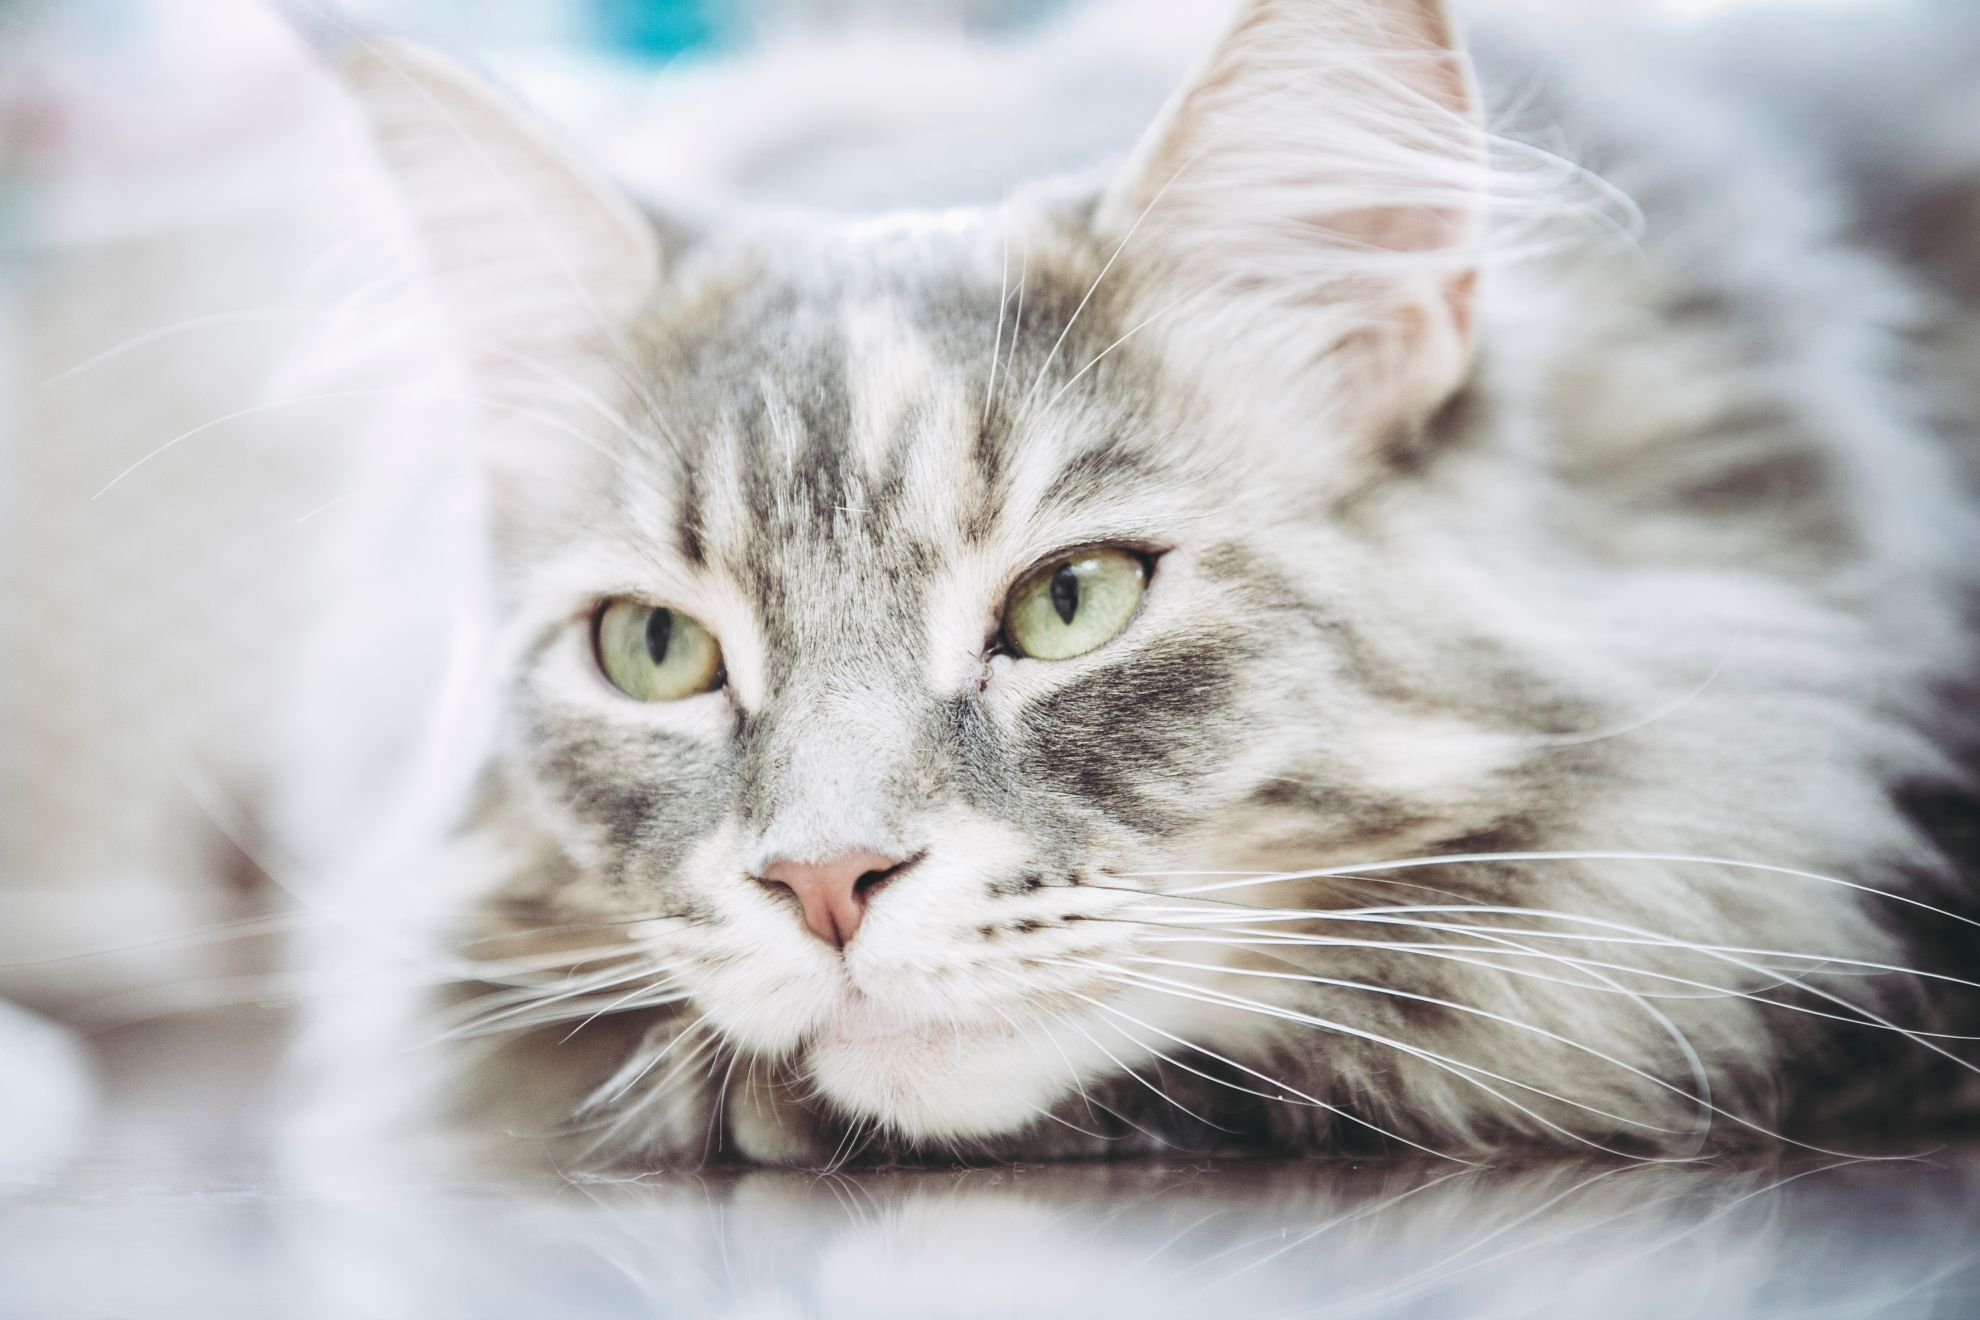 Сколько живут кошки - сколько лет в среднем живут кошки в домашних условиях  | Royal Canin